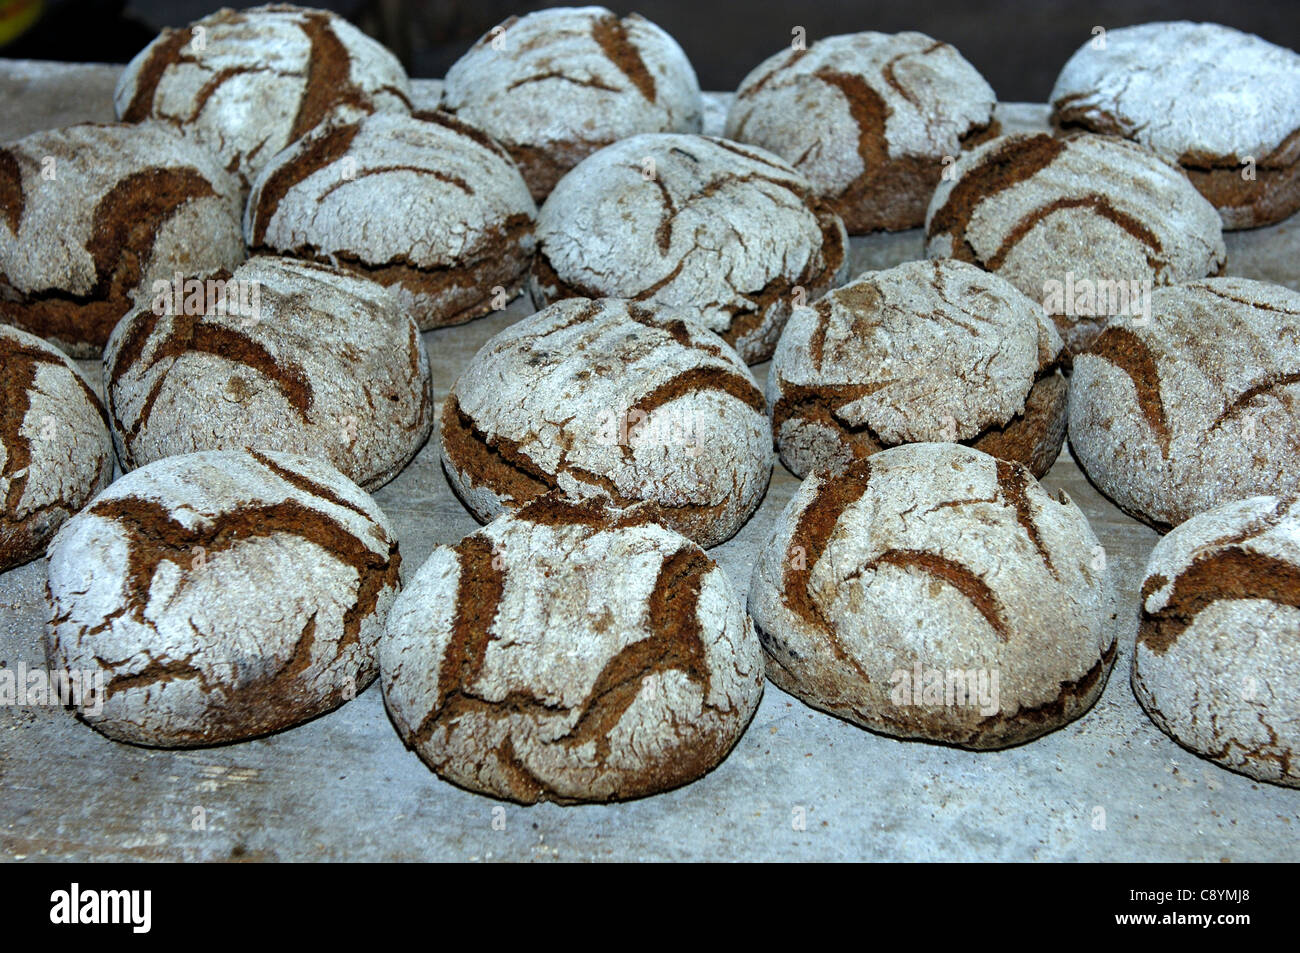 Frisch gebackene Walliser Roggen Brot, Erschmatt, Wallis, Schweiz Stockfoto